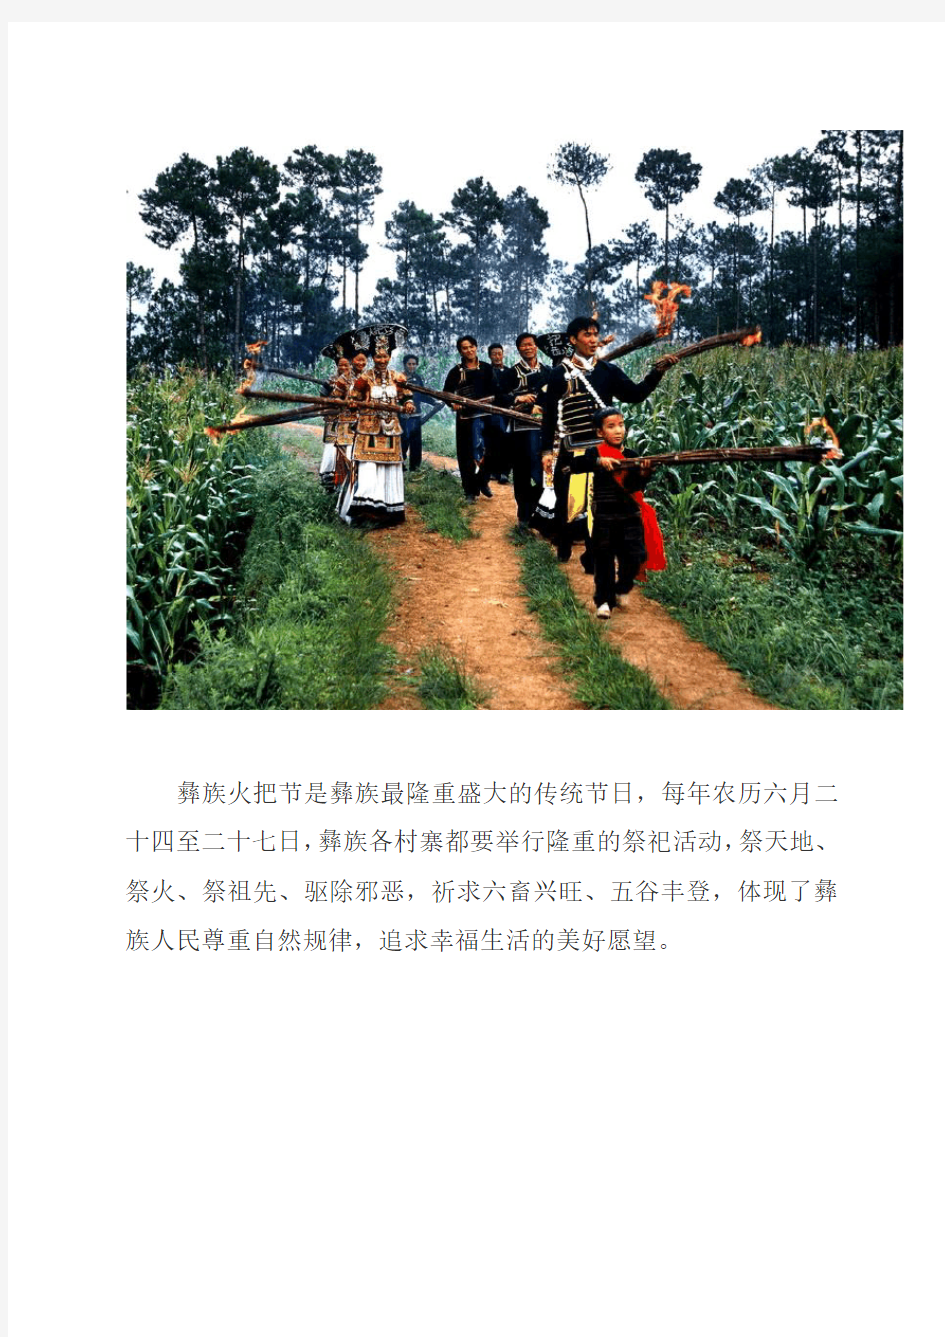 彝族火把节是彝族最隆重盛大的传统节日